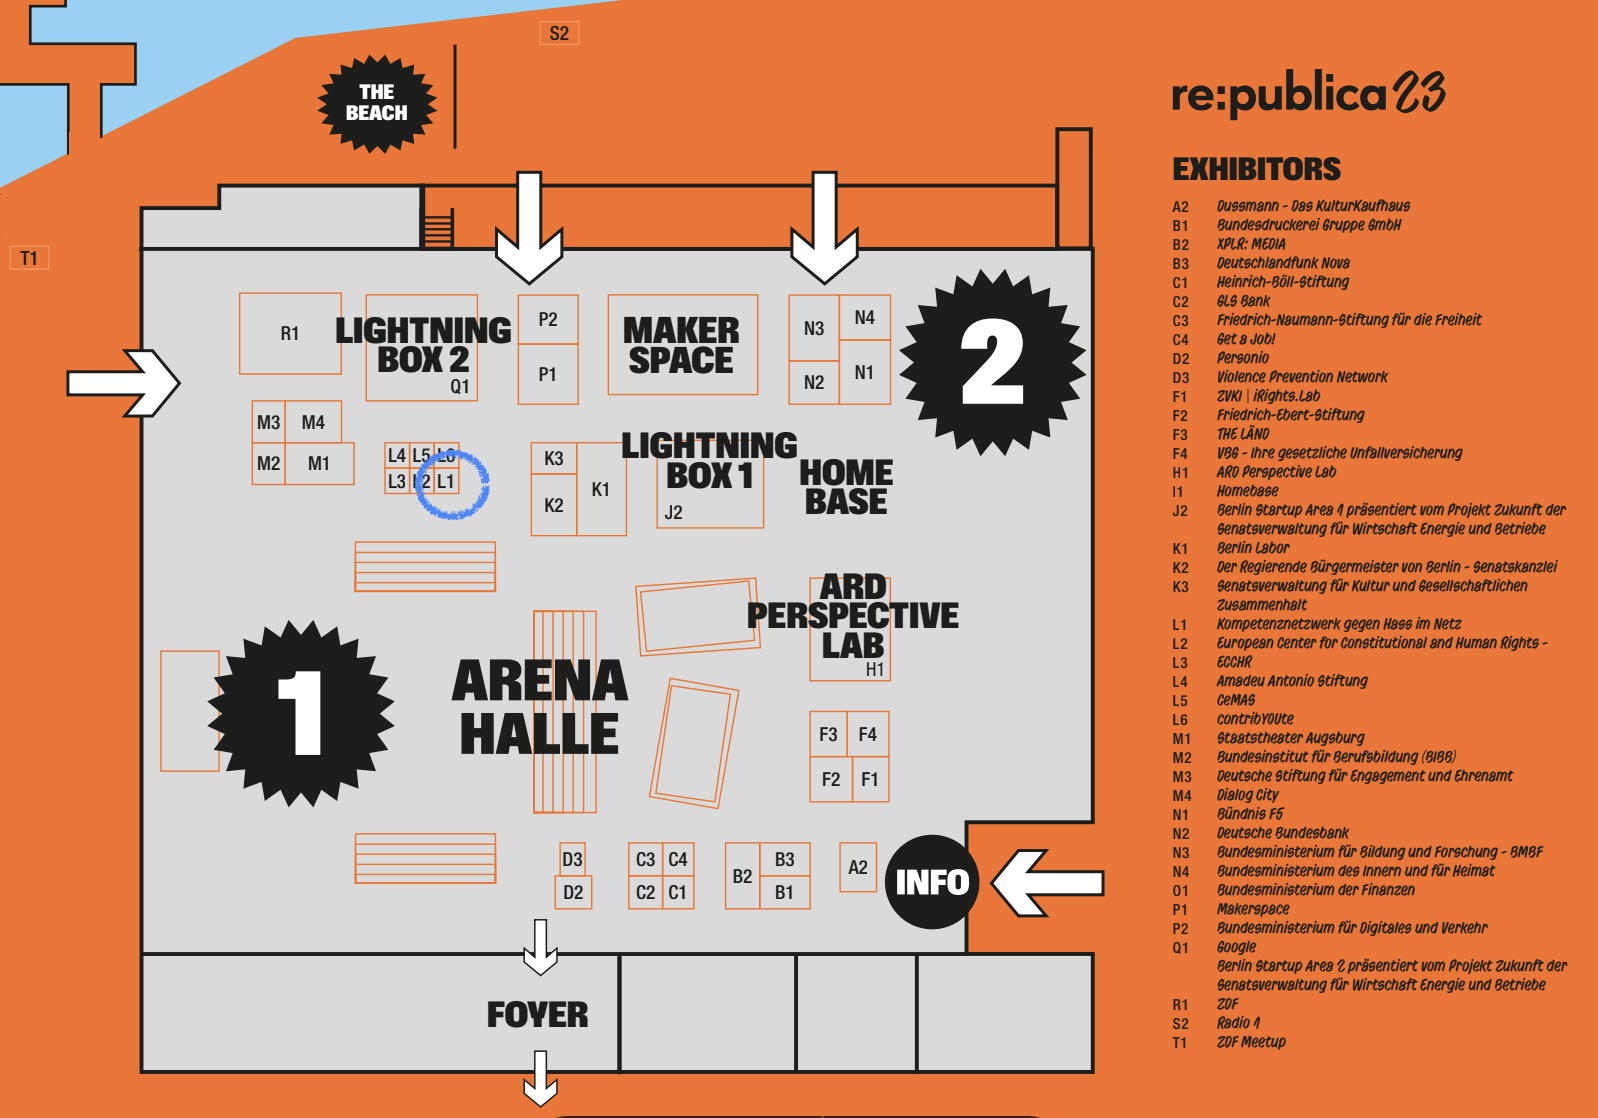 Lageplan der Arena-Halle bei der re:publica 23 in Orange und Grau mit eingezeichneten Ständen, Beschriftungen und der Liste an Ausstellenden.